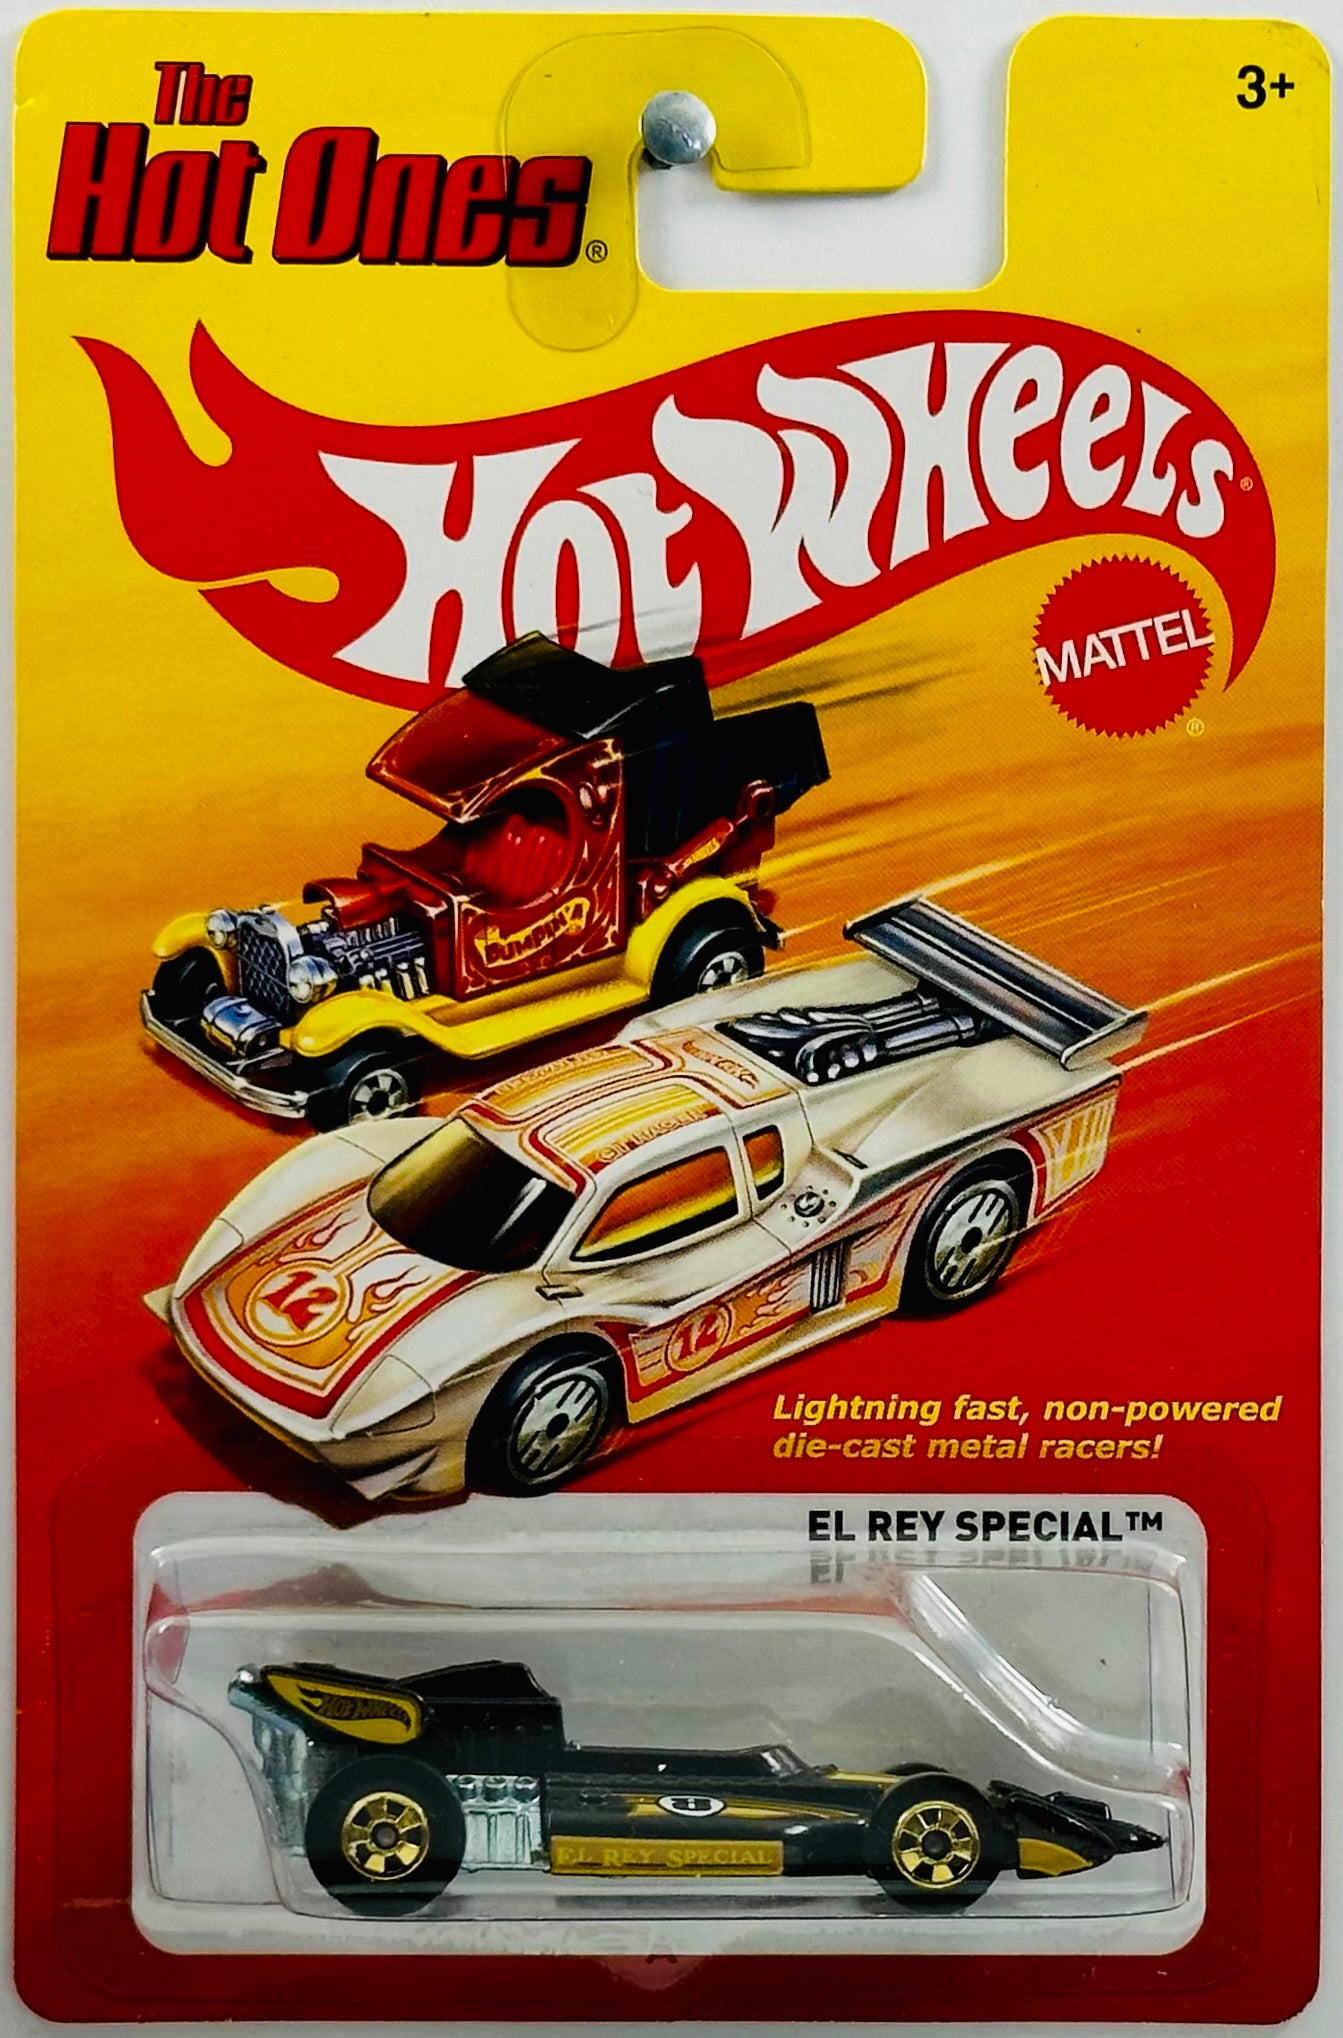 Hot Wheels 2012 - The Hot Ones - El Rey Special - Black - Gold Basic Wheels - Metal/Metal - Lightning Fast Metal Racers